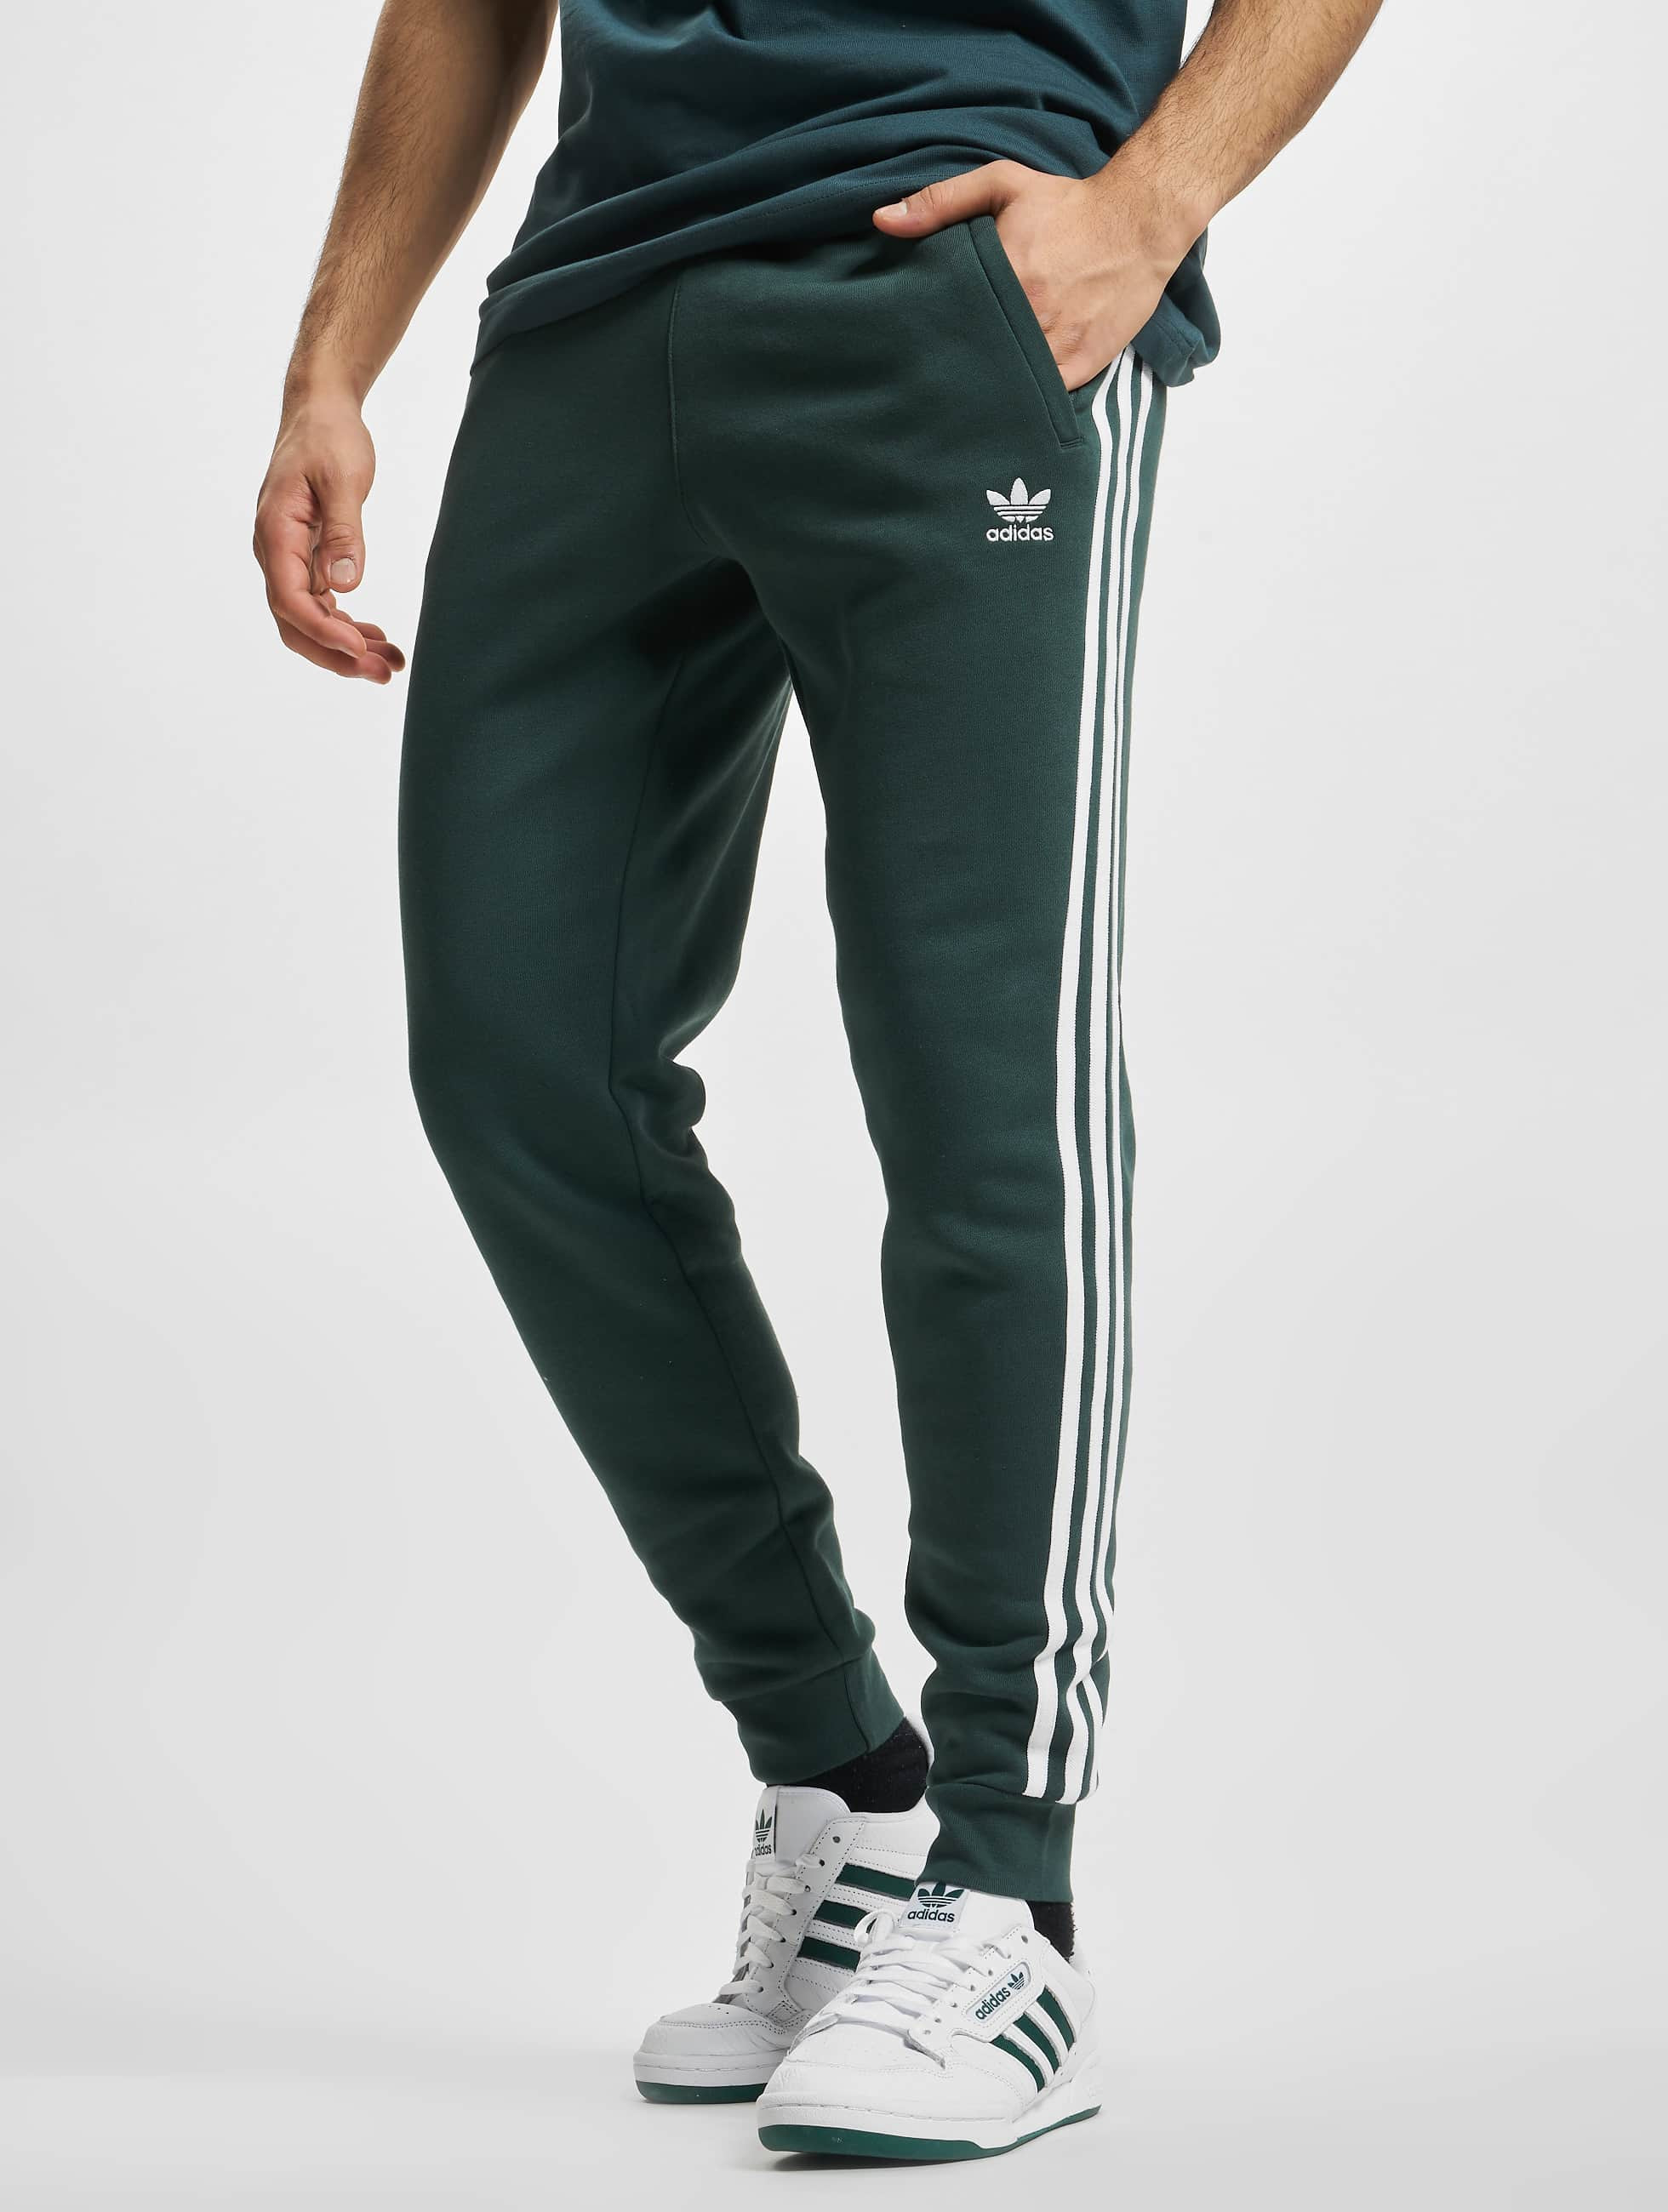 adidas Originals broek / joggingbroek Originals 3-Stripes in groen